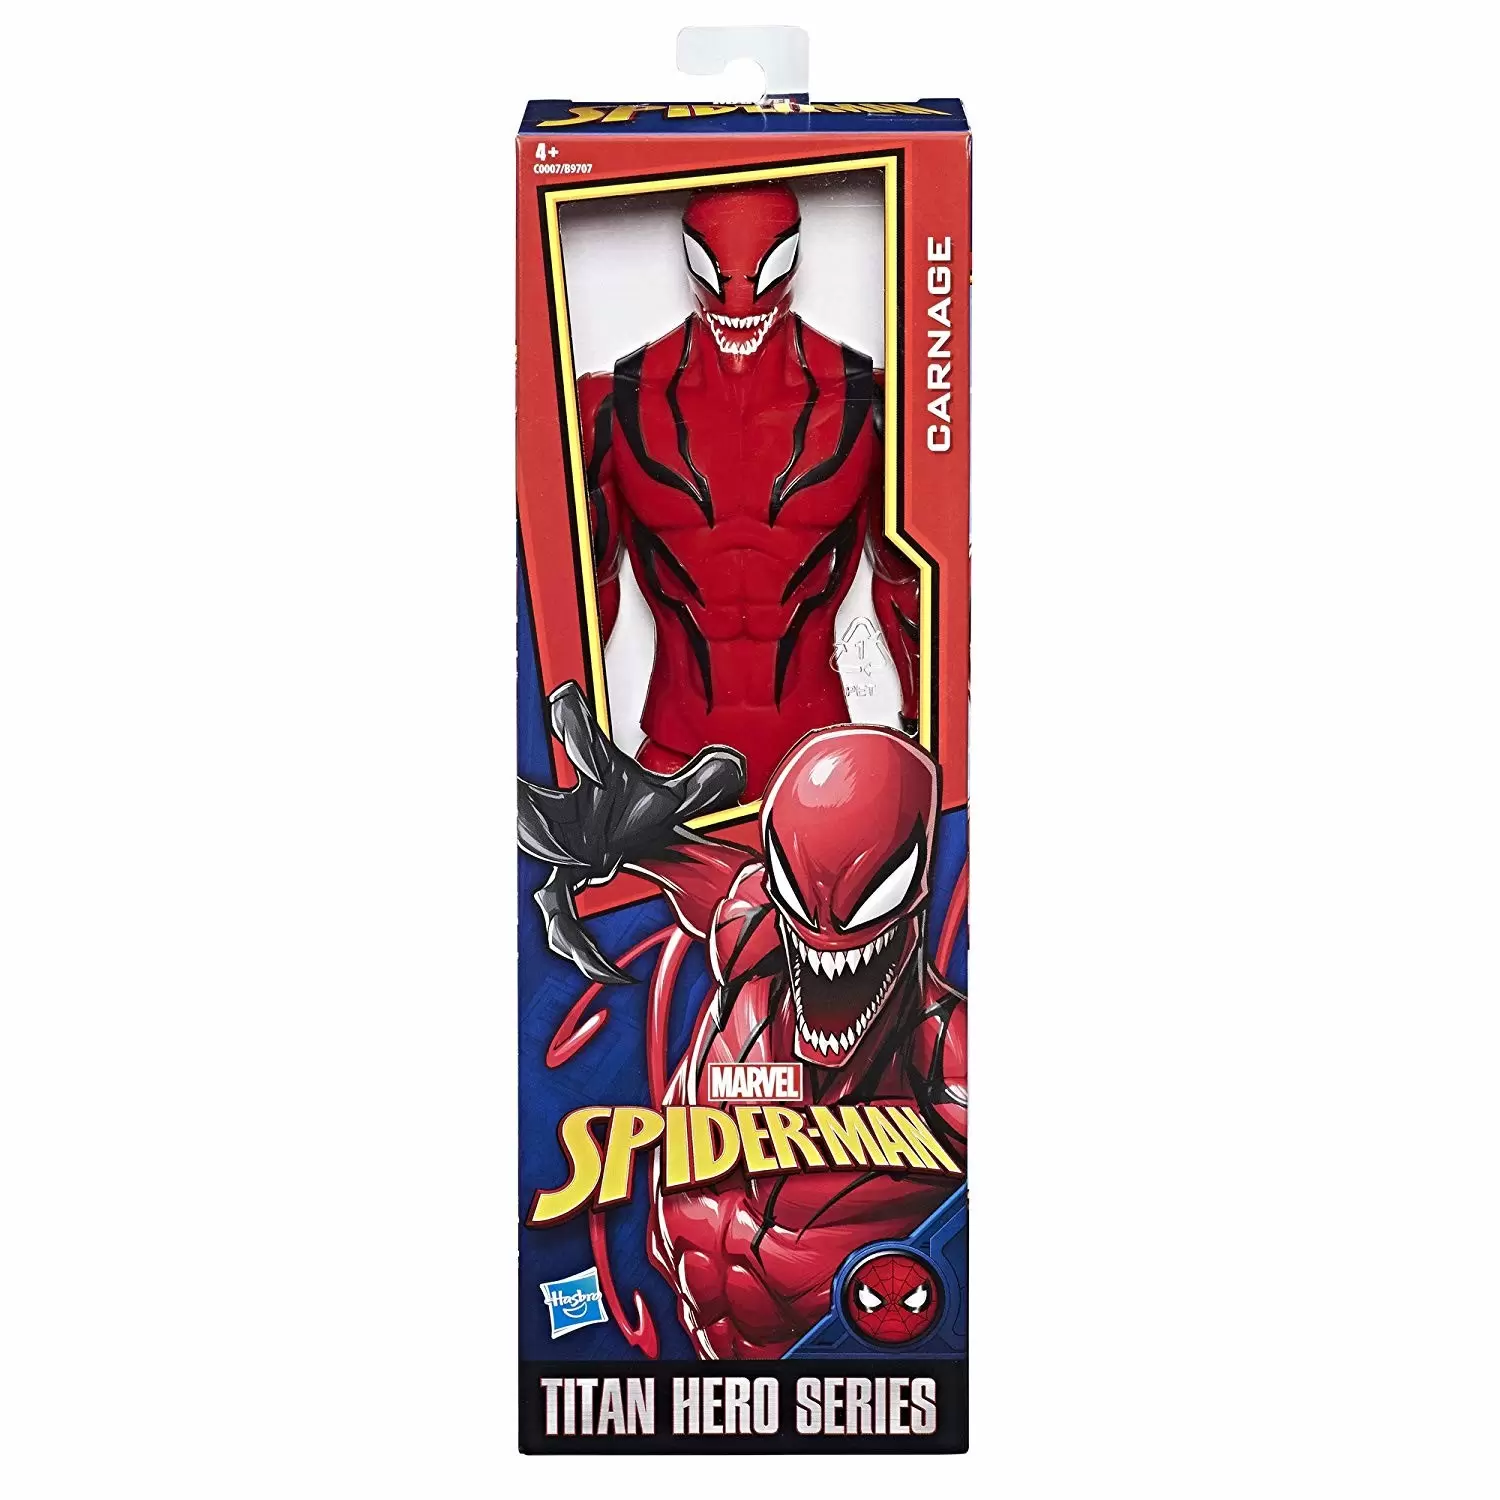 Titan Hero Series - Carnage - Spider-Man